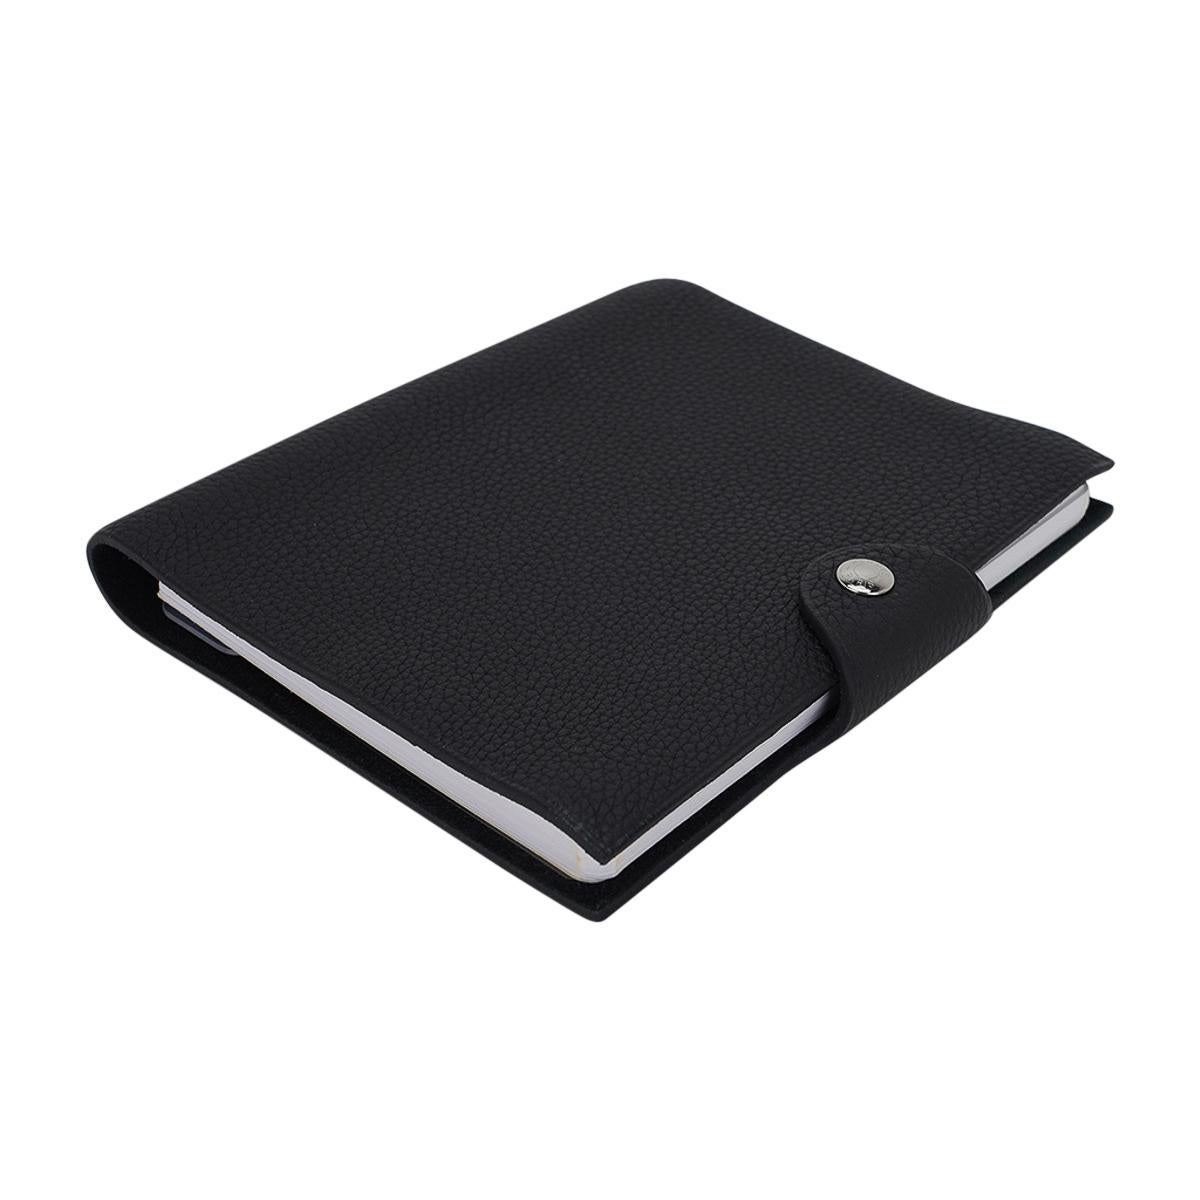 Mightychic bietet ein Hermes Ulysse PM Modell Notebook-Hülle verfügt über Black Togo Leder.
Palladium Clou de Selle  schnappen. 
Wird mit einer neuen Ulysse-Notizbuchmine geliefert.   
Neu oder lagerfrisch